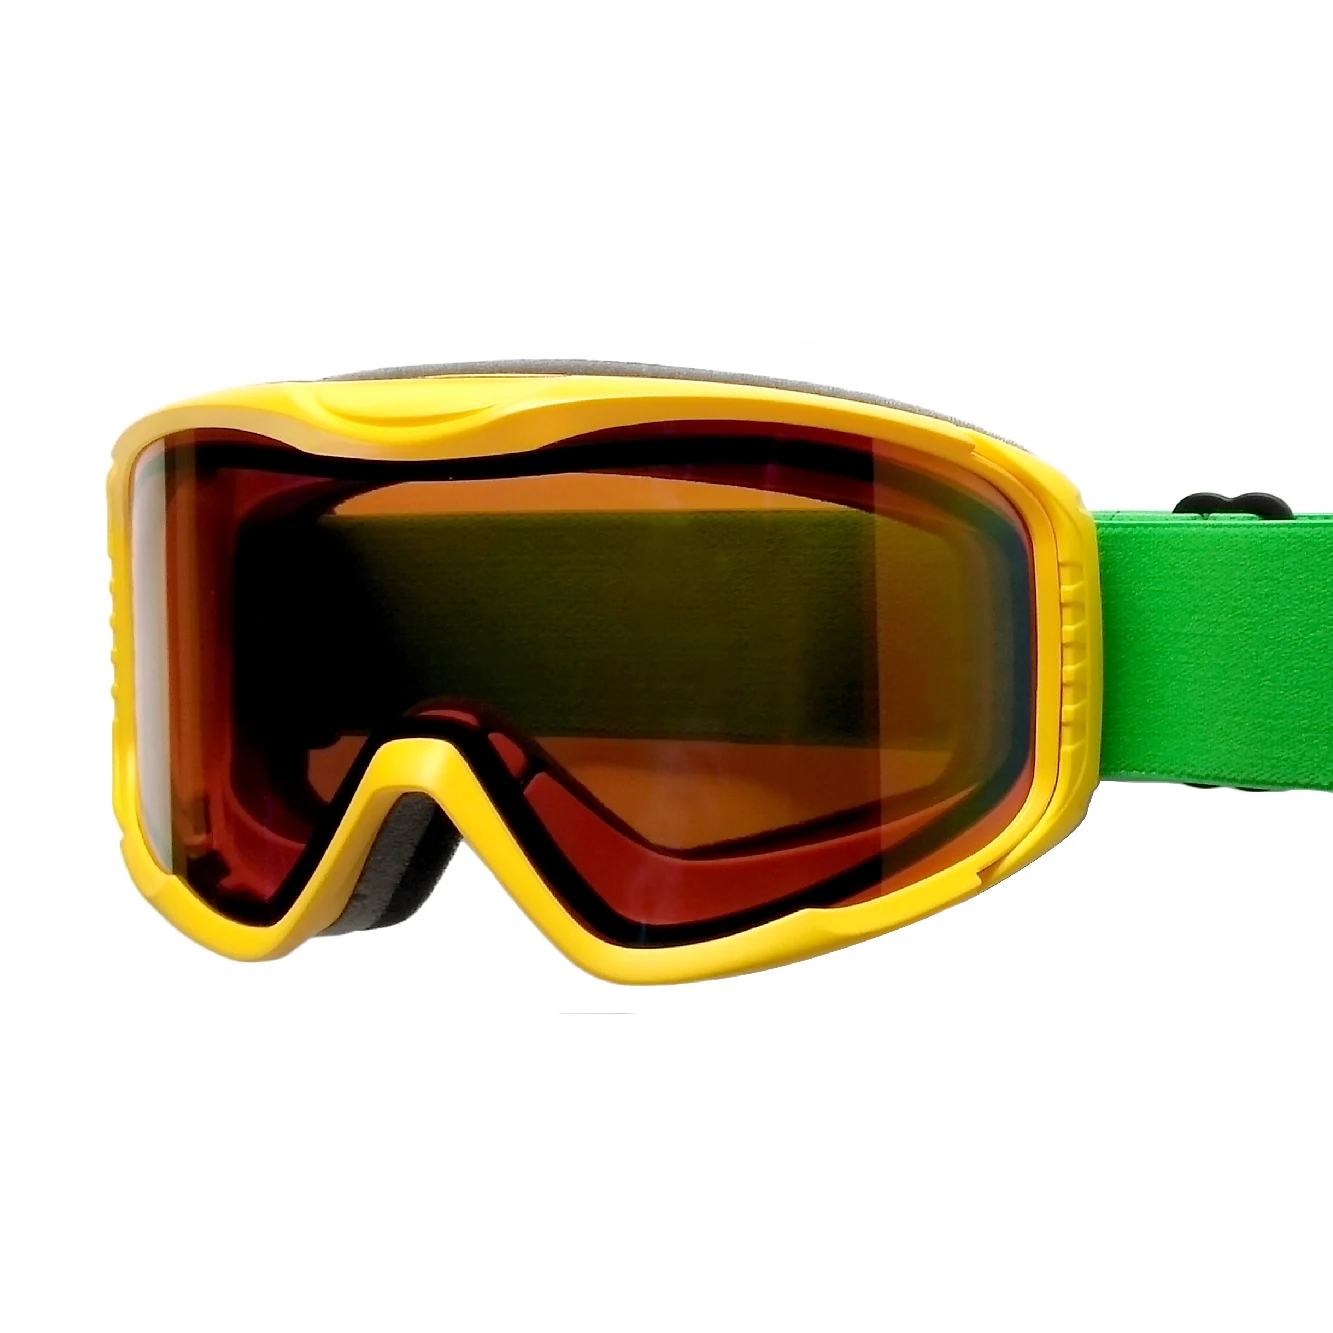 Skiing sunglasses motocross frame